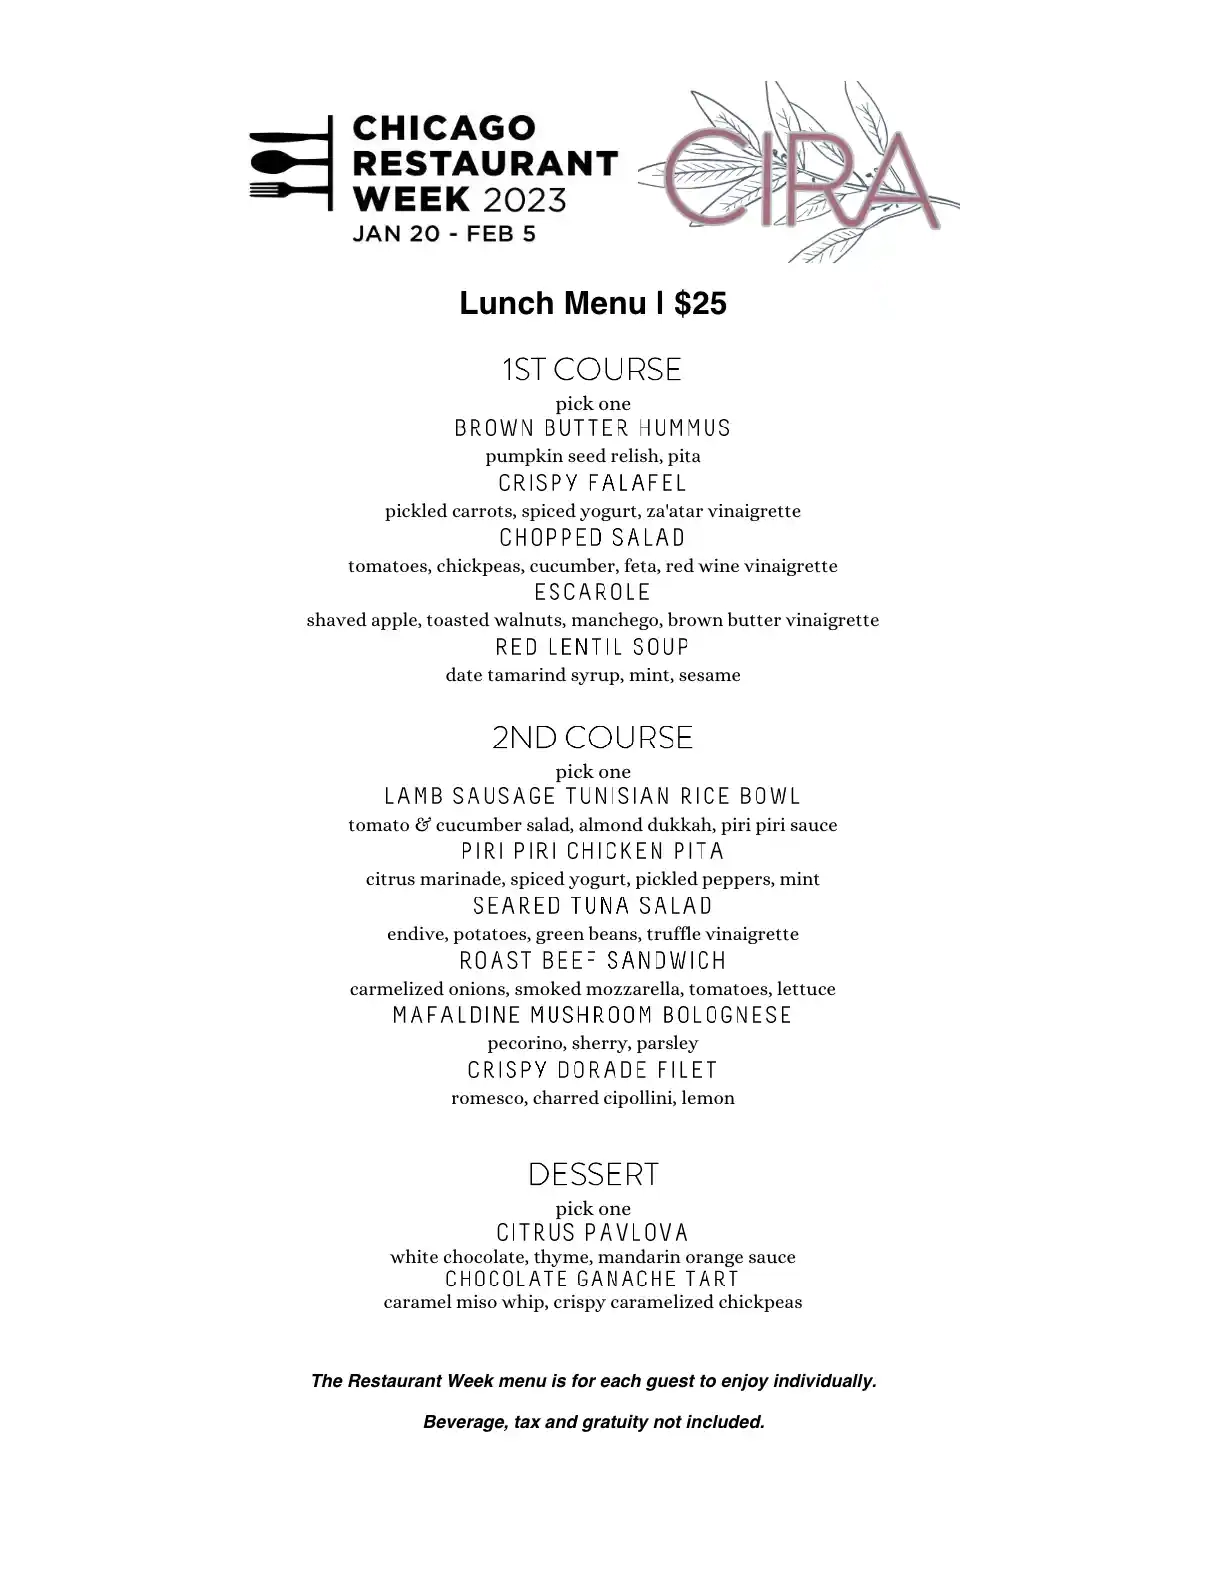 Chicago Restaurant Week 2023 Menu Cira Lunch